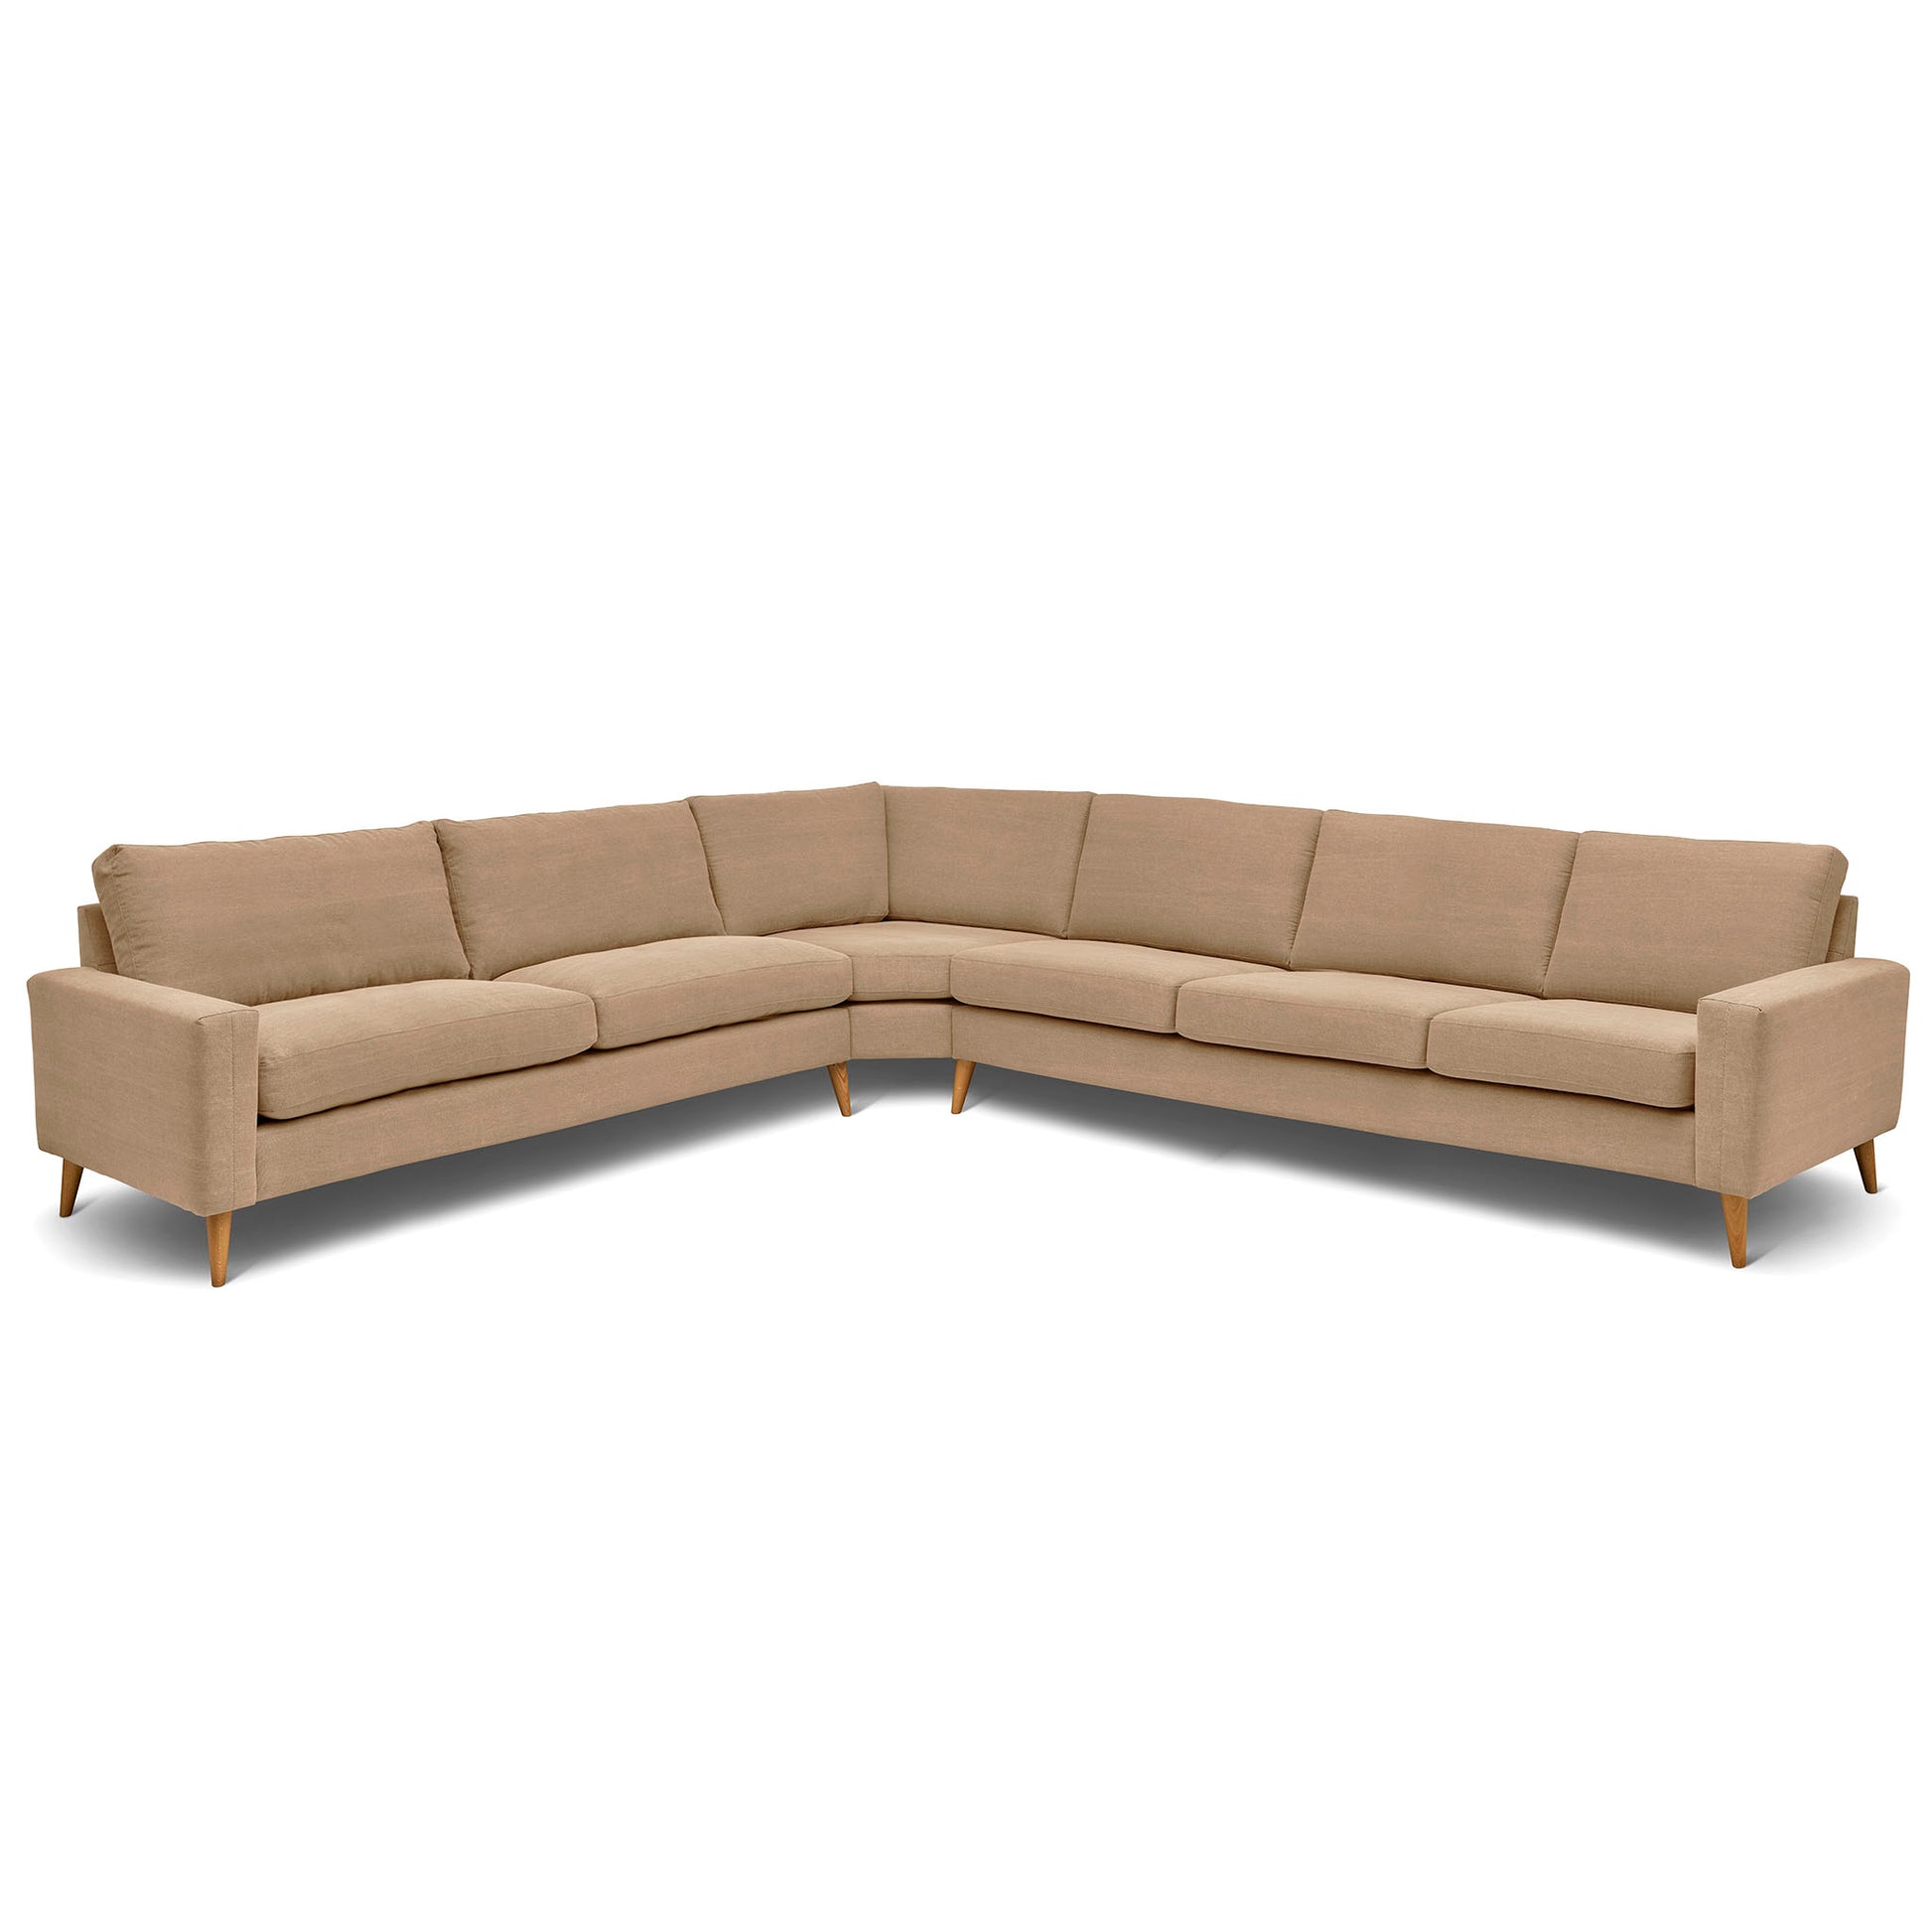 Stor rektangulär hörnsoffa med måttet 321x360 cm. Sittvänlig soffa för äldre i beige tyg